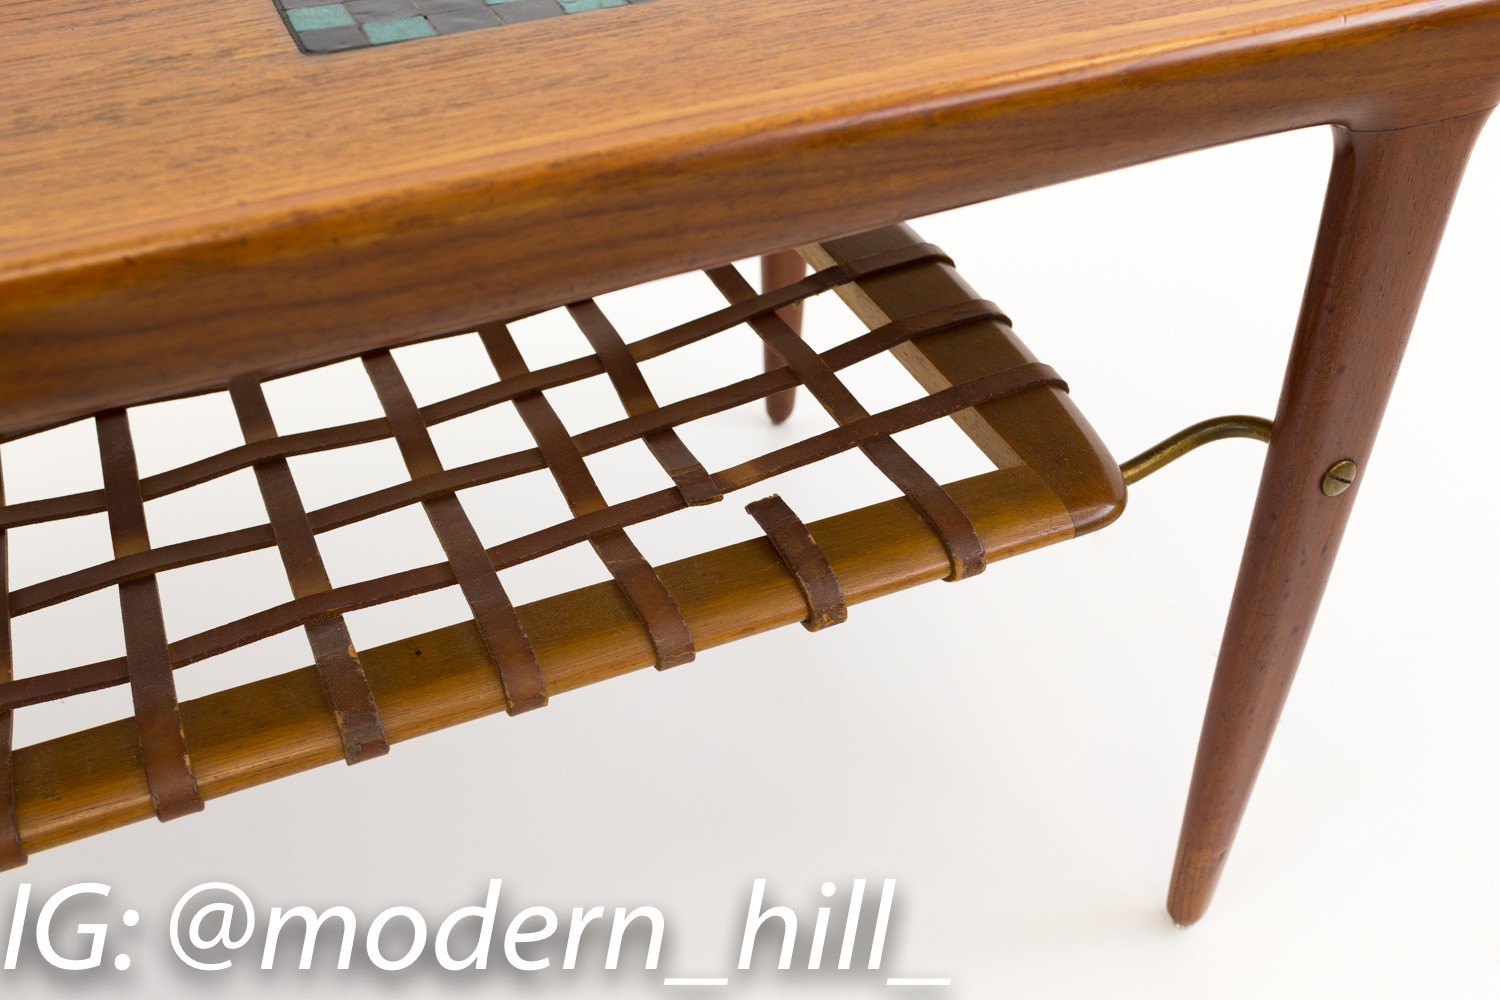 Arne Hovmand Olsen for Mogens Kold Mid-century Modern Danish Teak Coffee Table with Mosaic